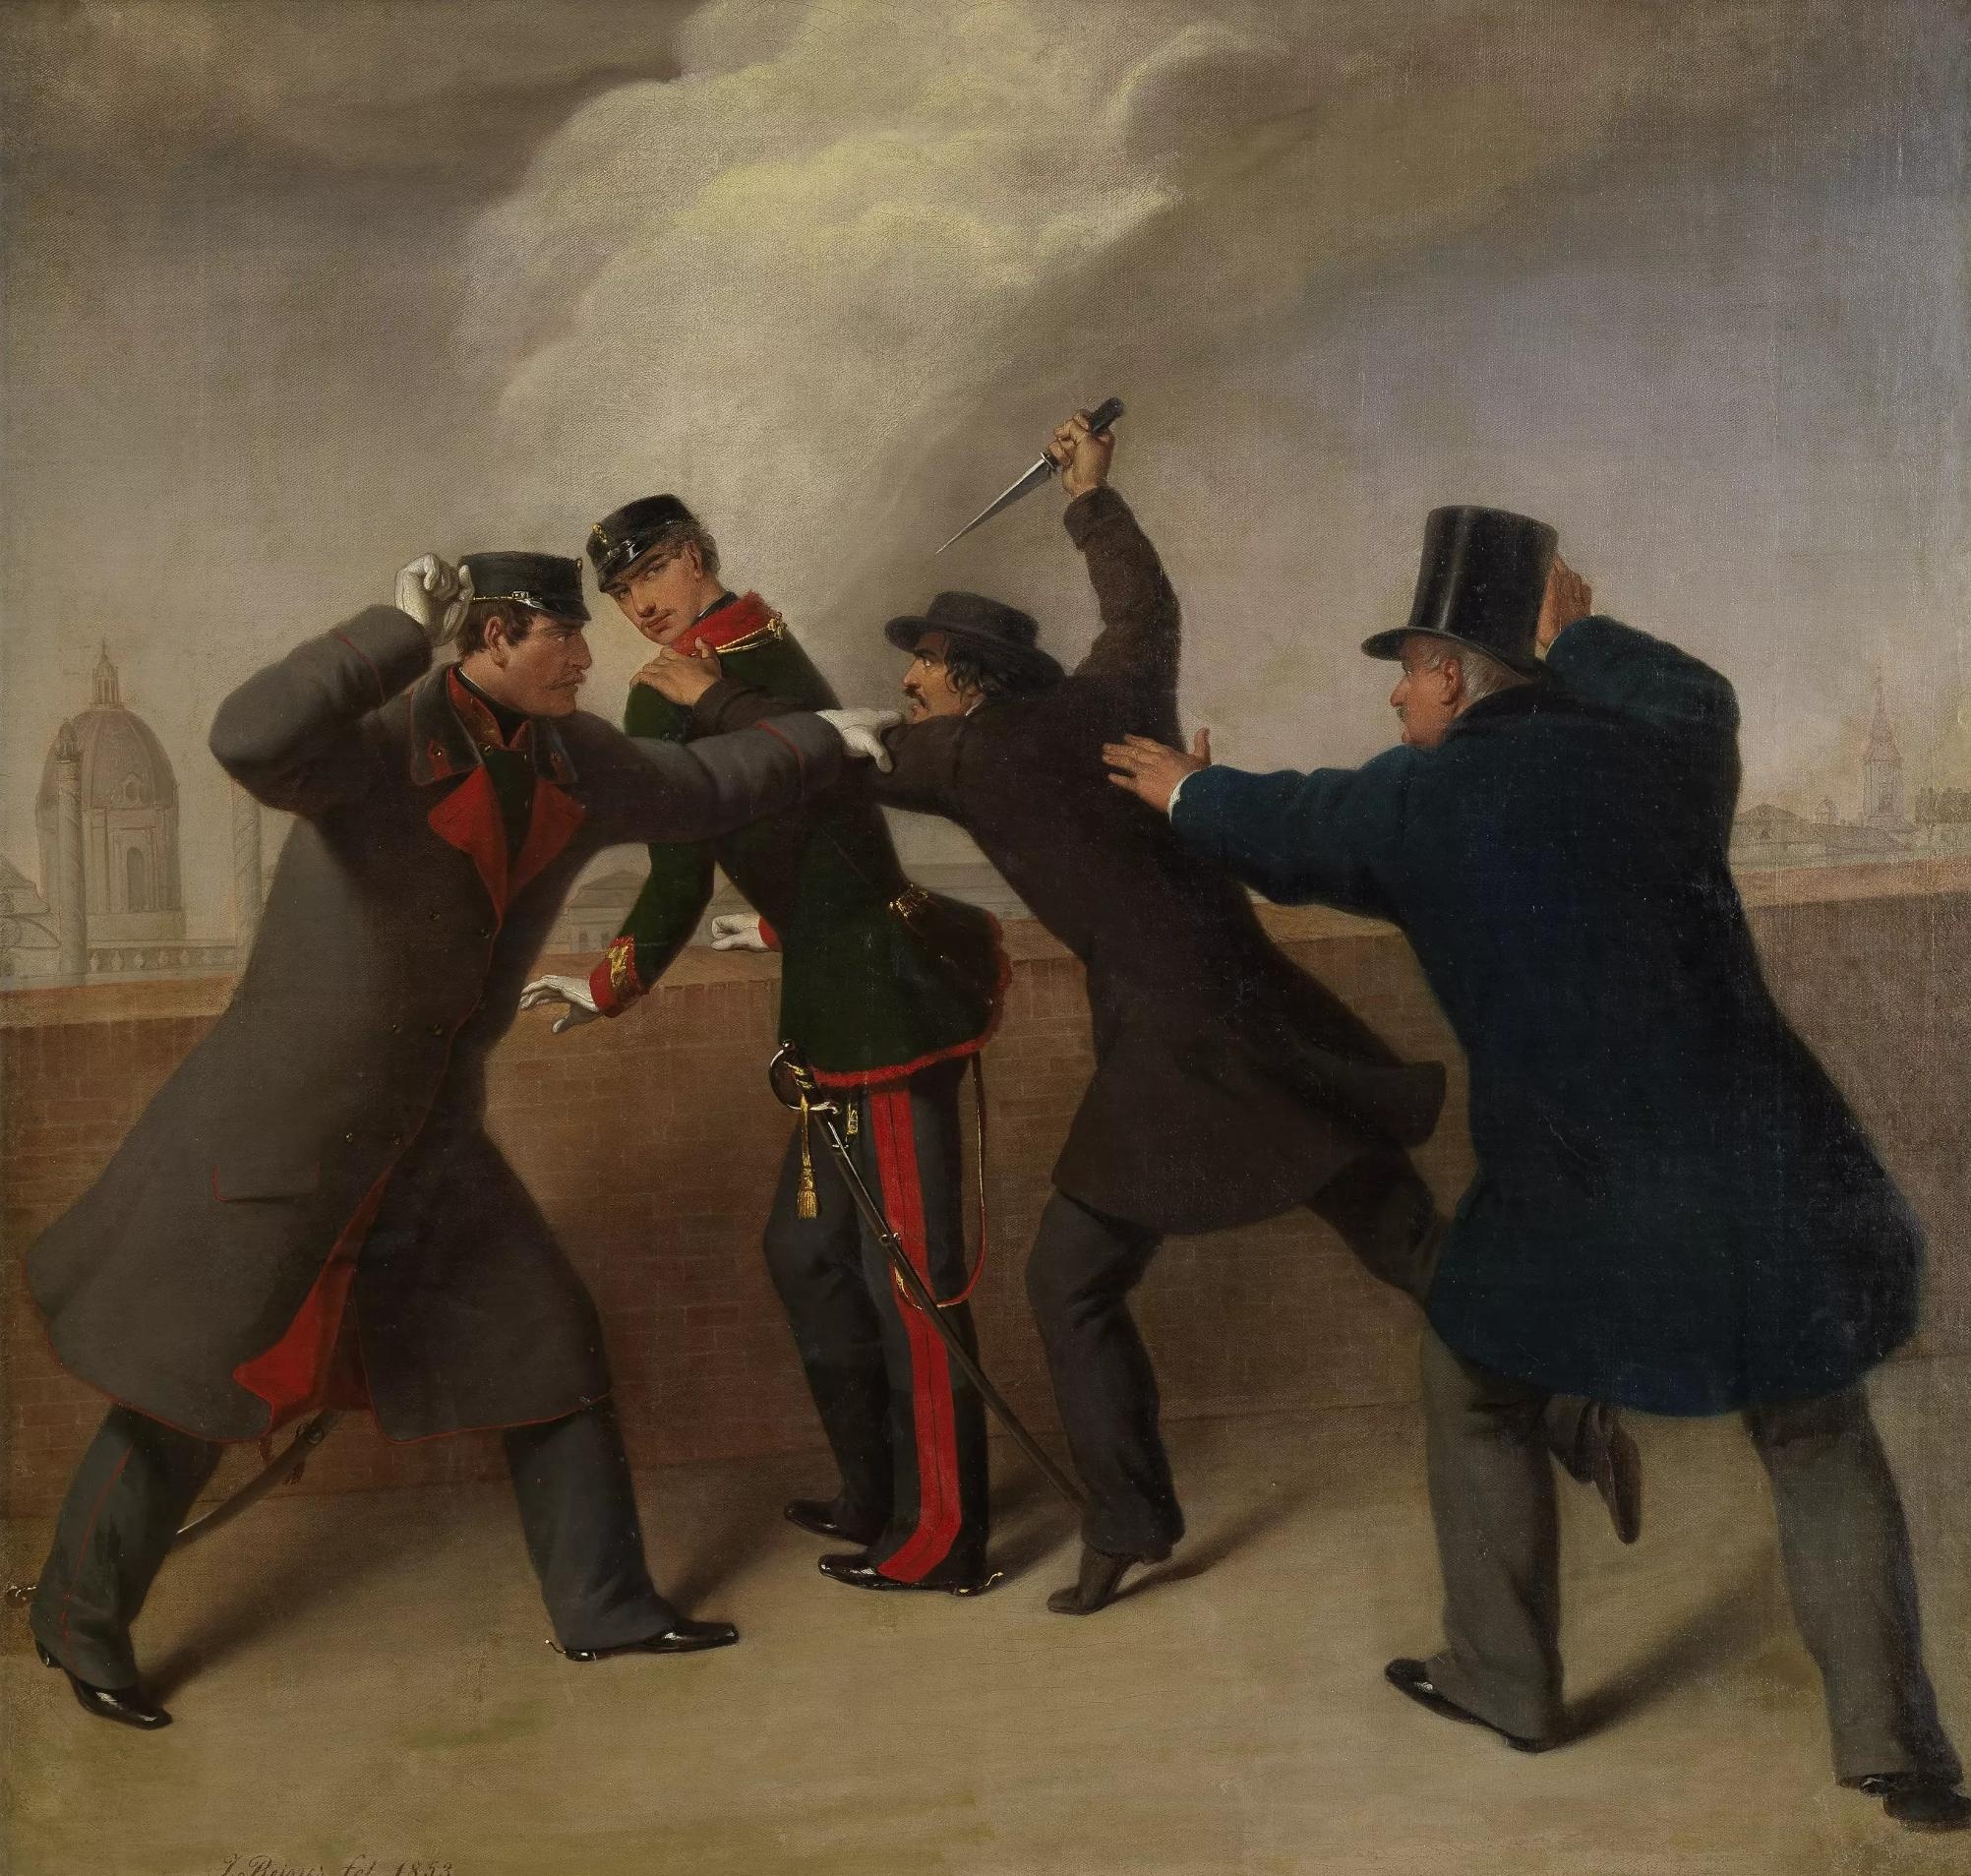 Gemälde von einem Mann mit Mantel und Hut, der mit einem Messer auf einen uniformierten Mann einsticht. Daneben stehen zwei Männer, die ihn davon abhalten wollen. Im Hintergrund Dächer von Häusern. © Wien Museum